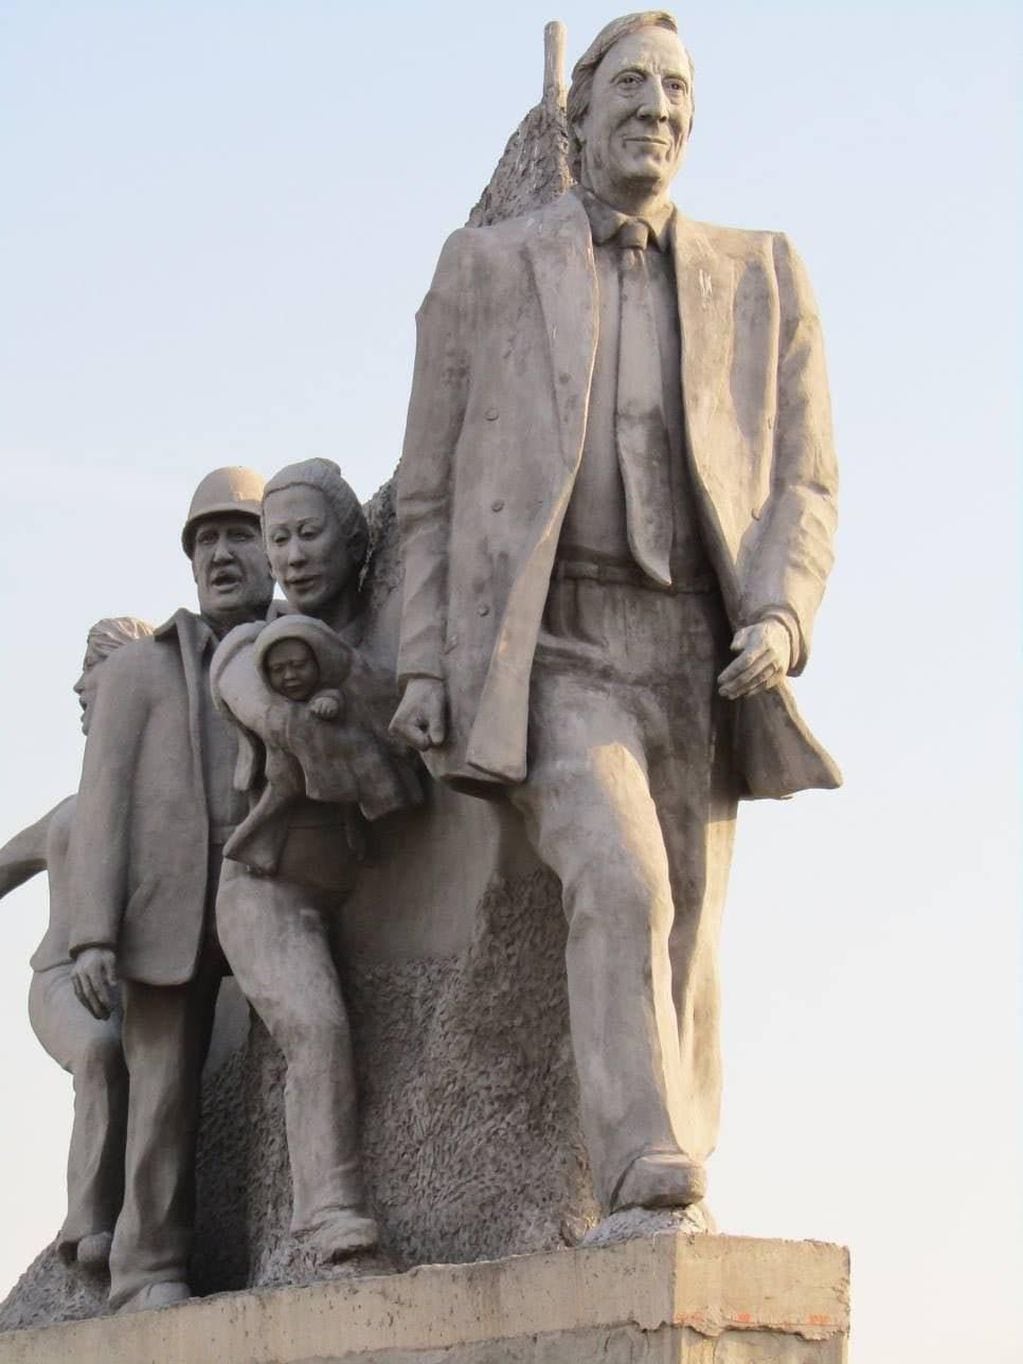 Atacaron una estatua de Néstor Kirchner en Buenos Aires.